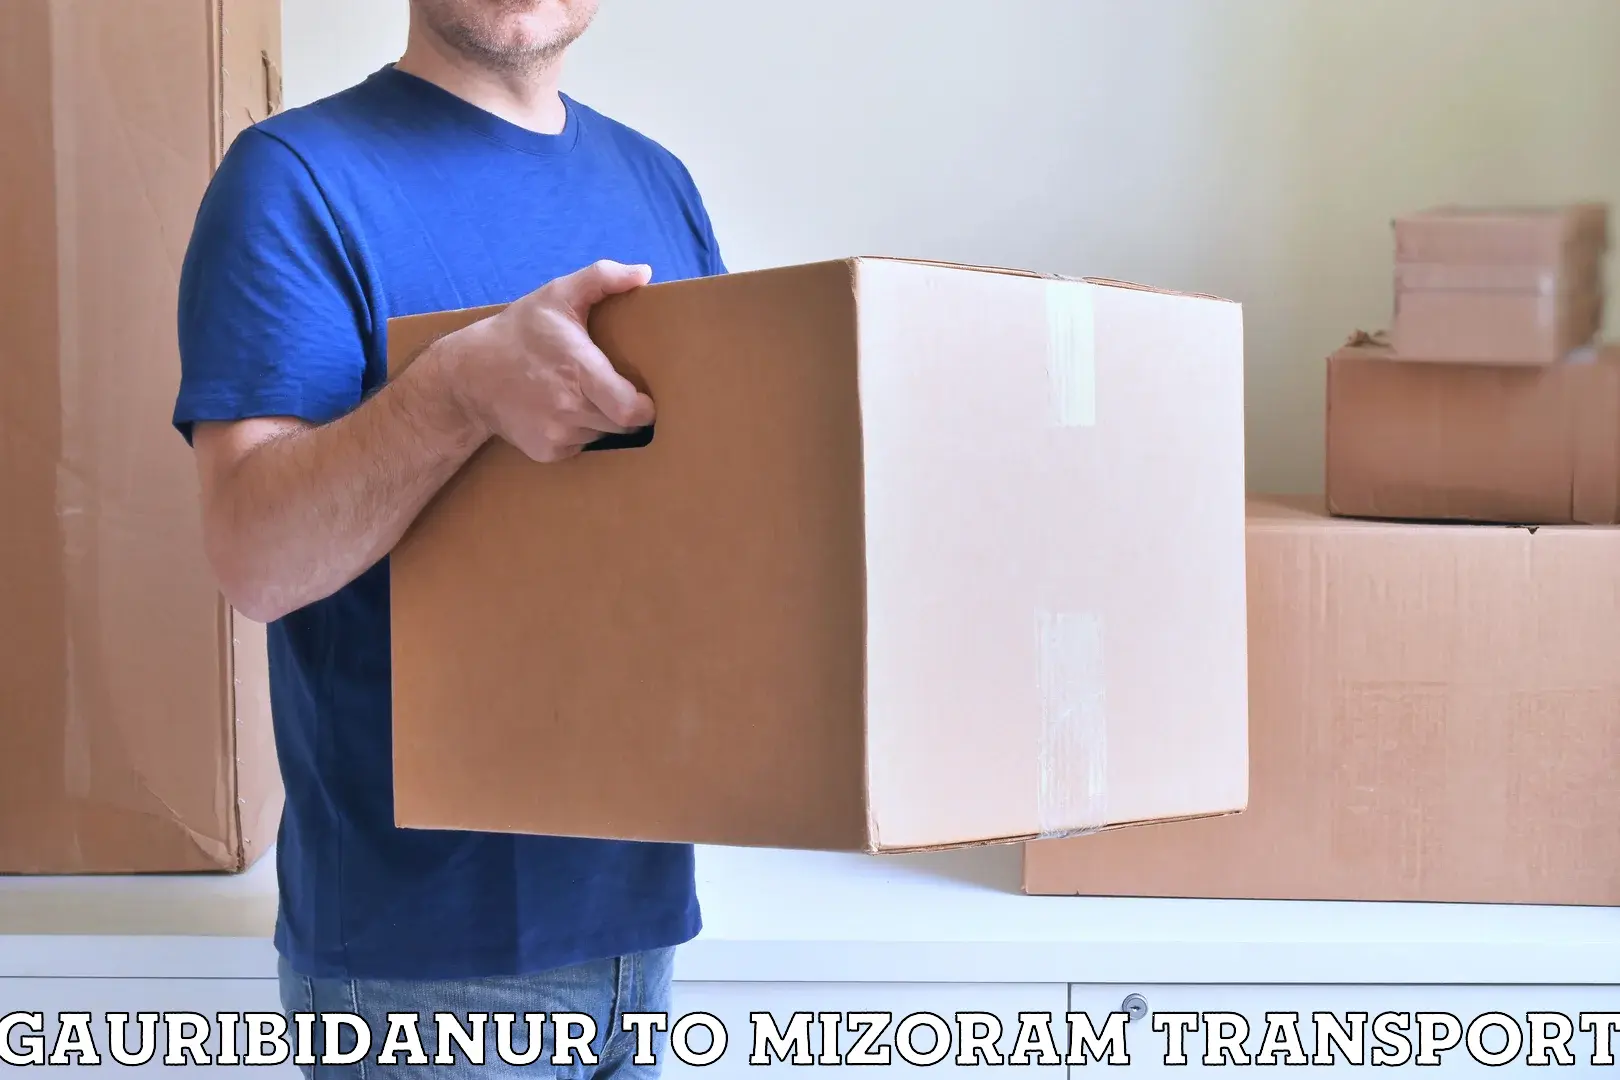 Container transport service Gauribidanur to Aizawl